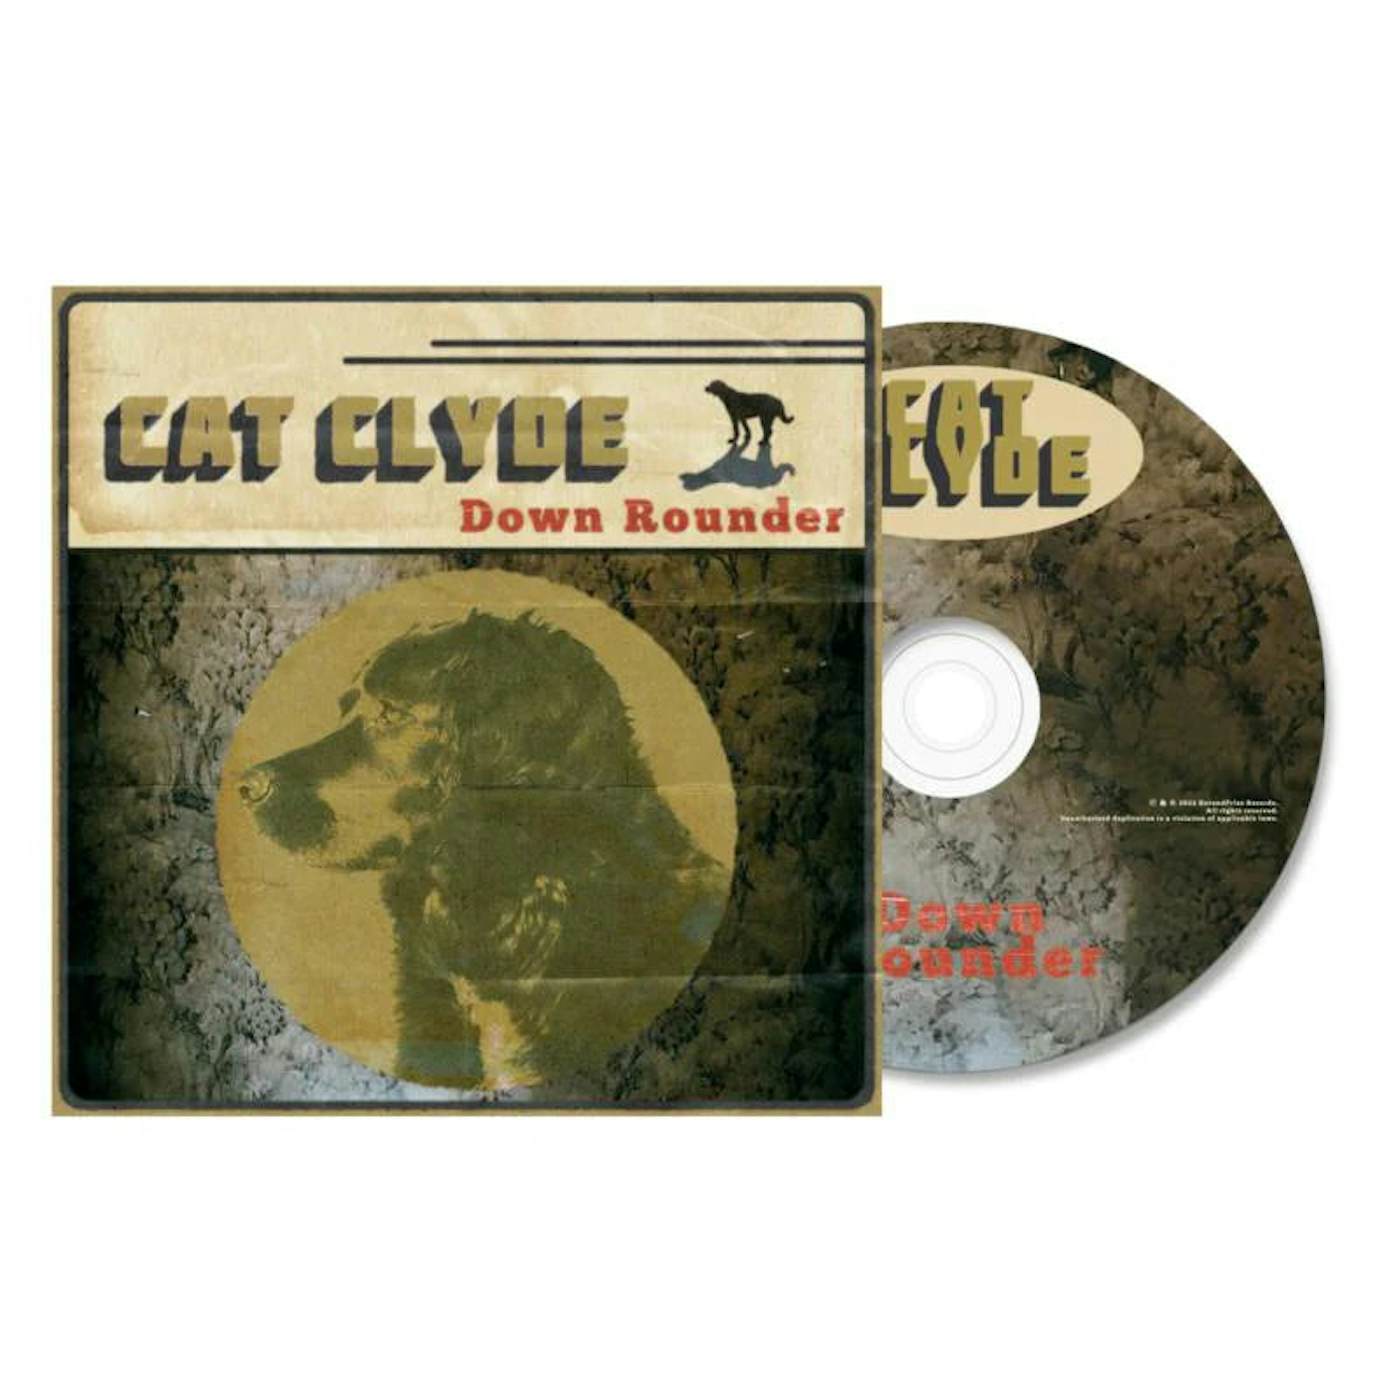 Cat Clyde LP - Down Rounder (Vinyl)